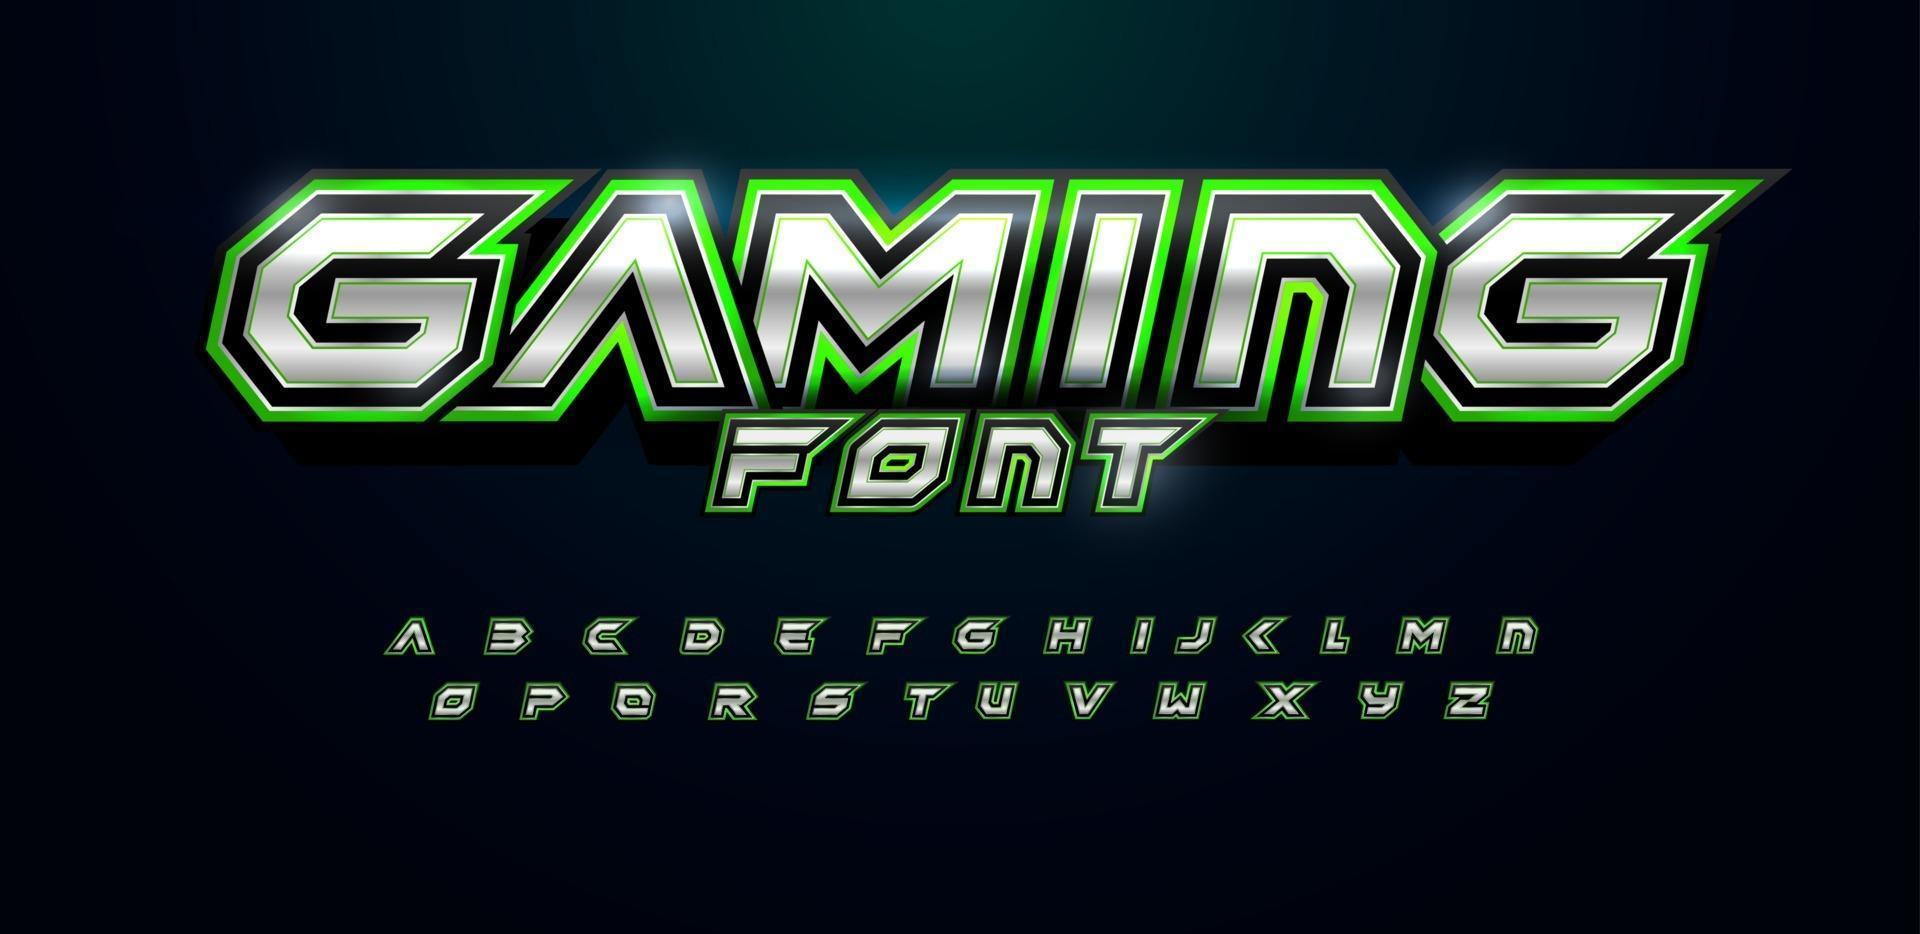 grönt alfabet futuristiskt teckensnitt för videospellogotyp och rubrik. djärva bokstäver med skarpa vinklar och gröna konturer. lutande skarpt teckensnitt på svart bakgrund. vektor typografi design med metall konsistens.